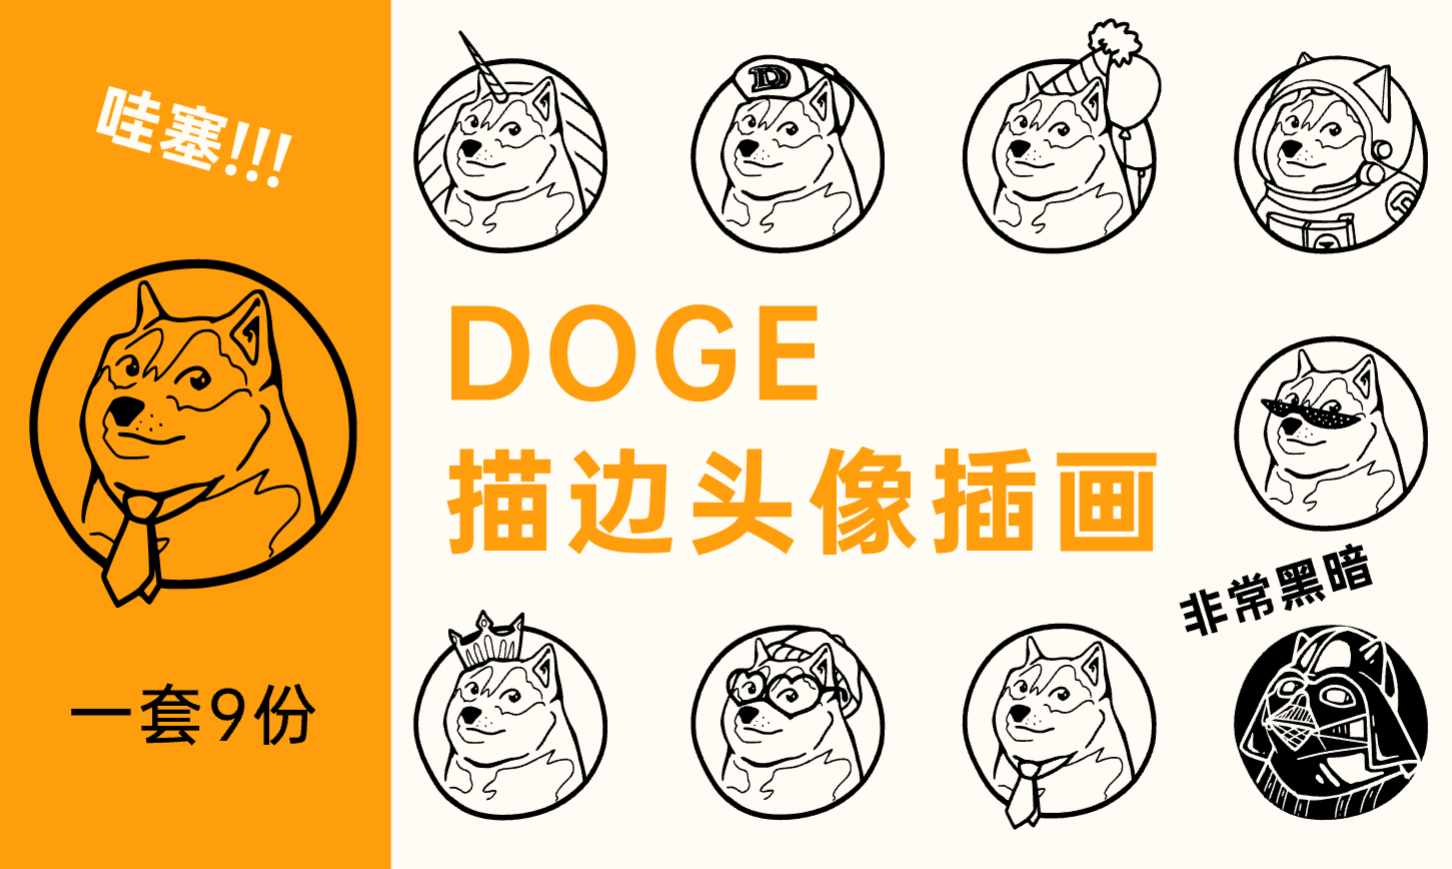 DOGE描边头像设计